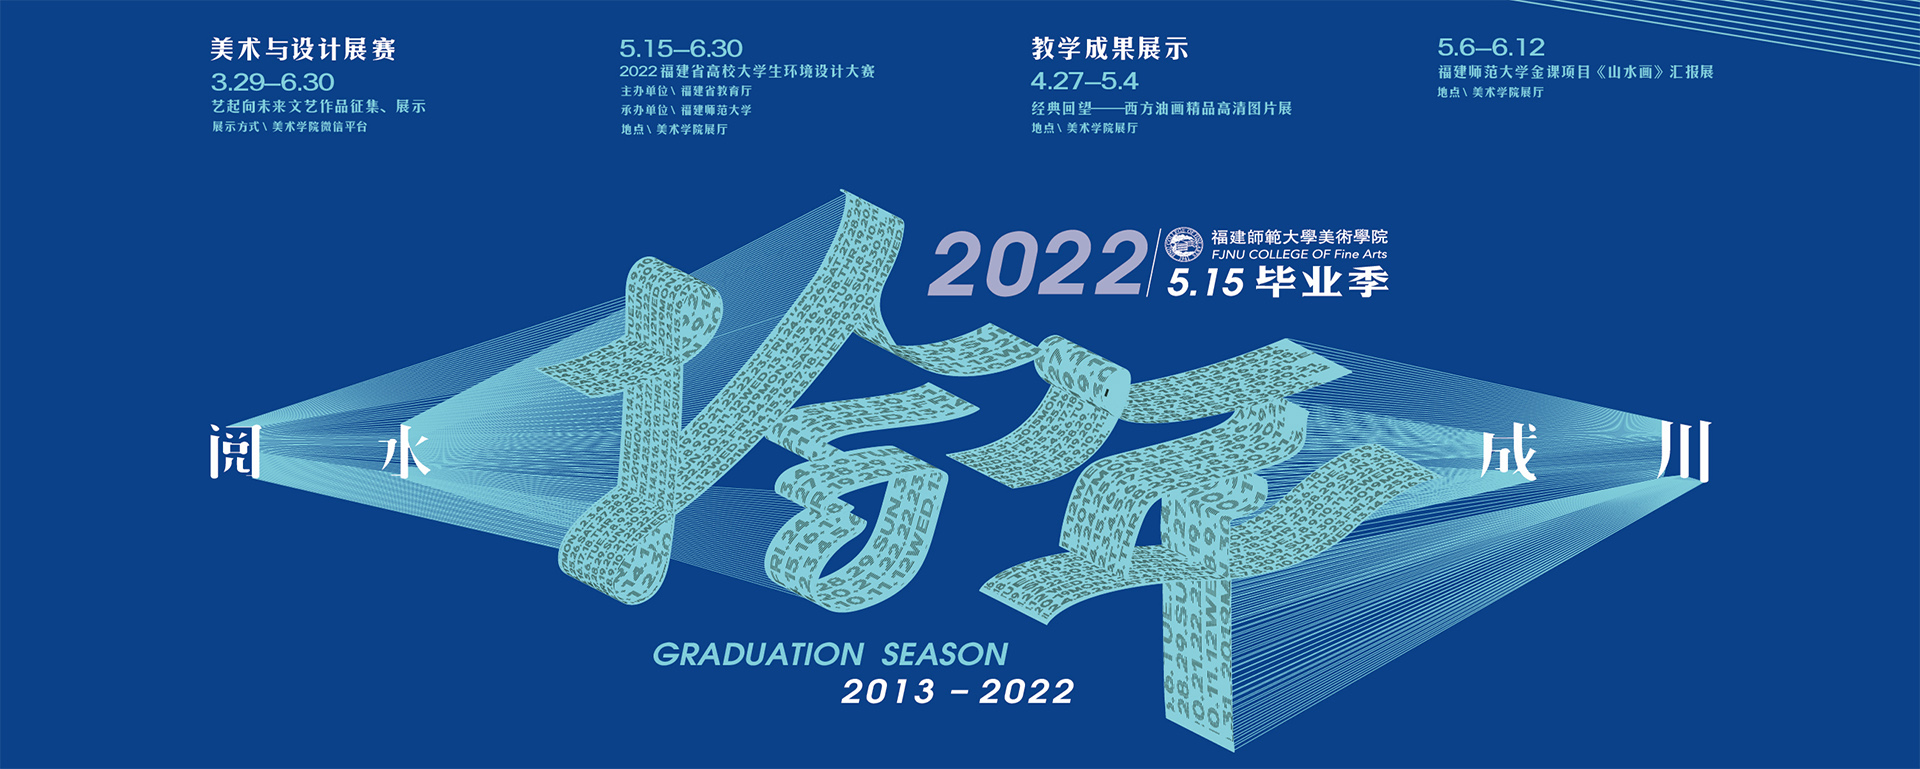 阅水成川—2022届5.15毕业展